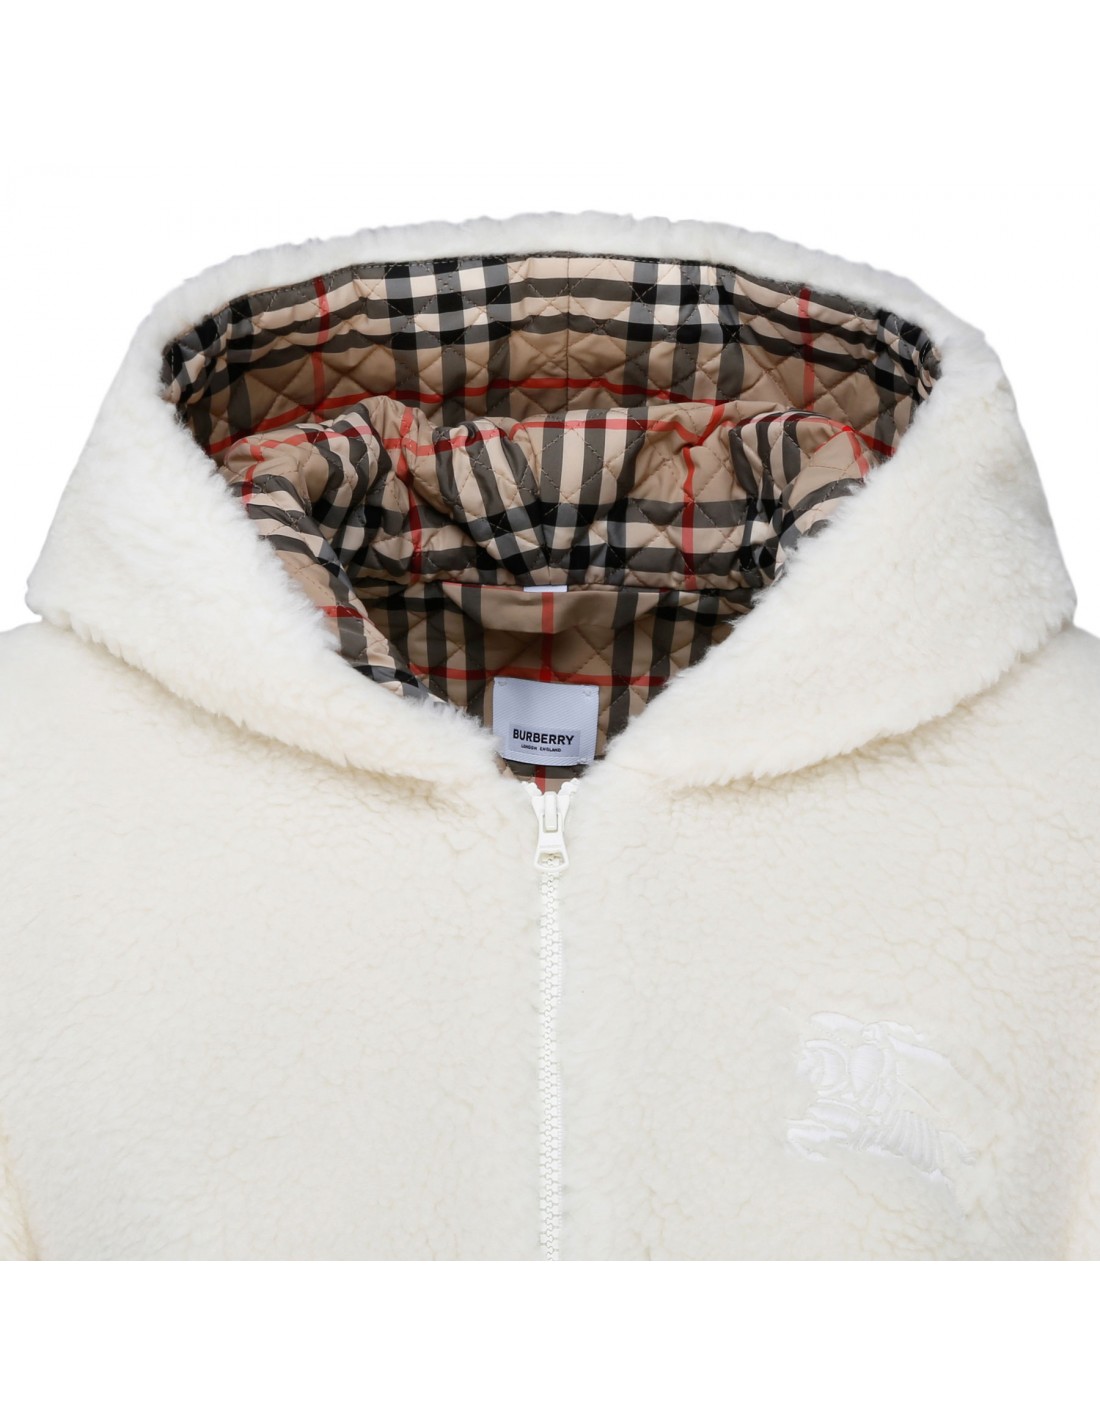 Fleece hooded jacket